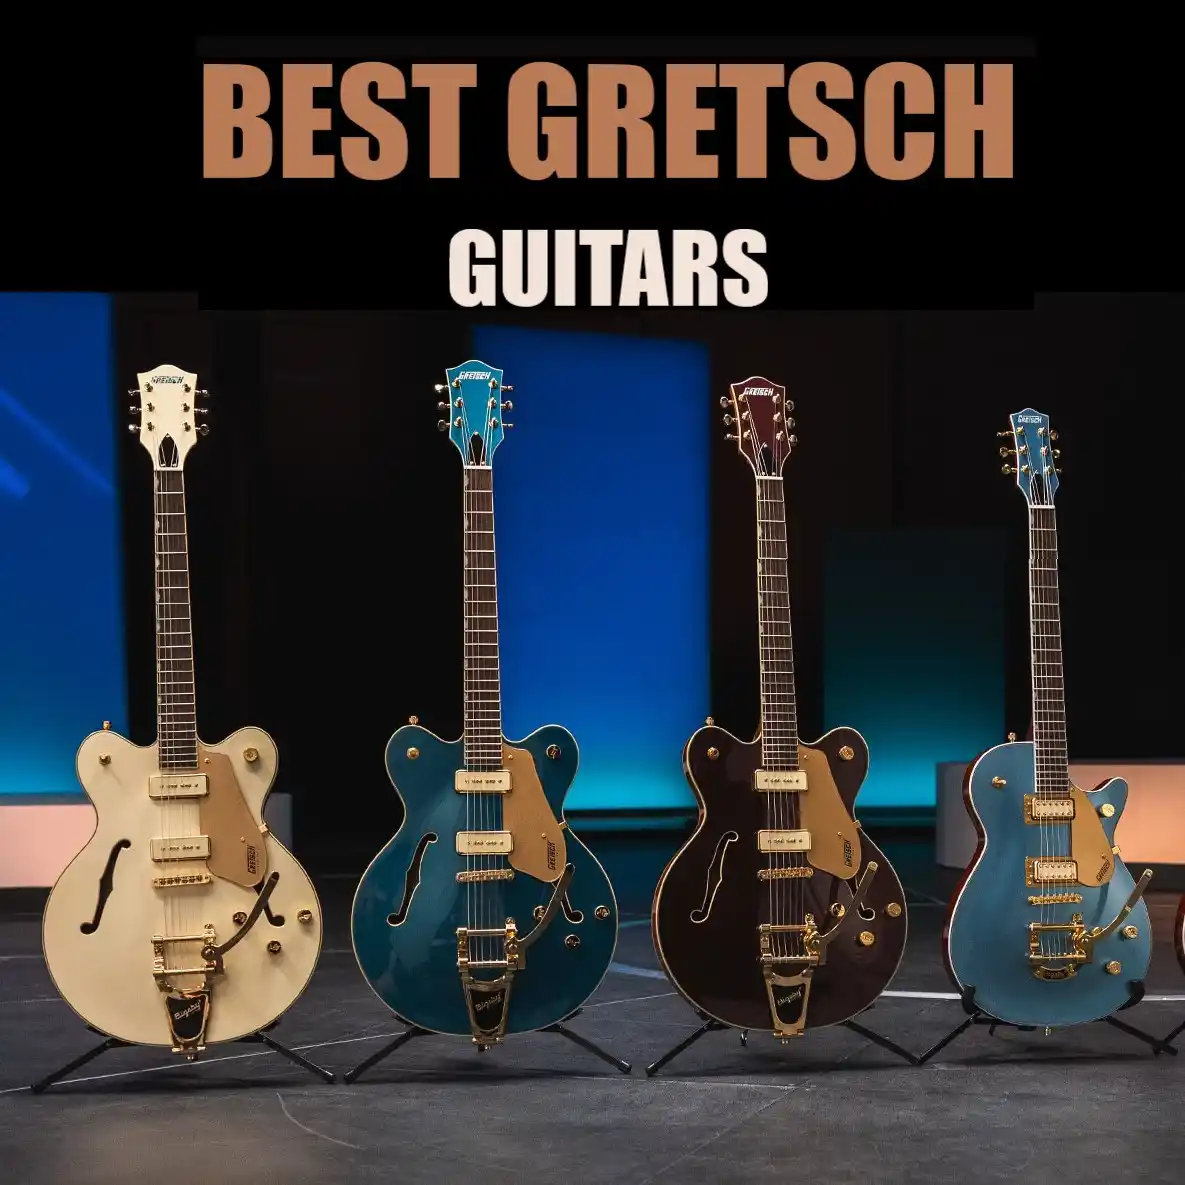 Best Gretsch Guitars